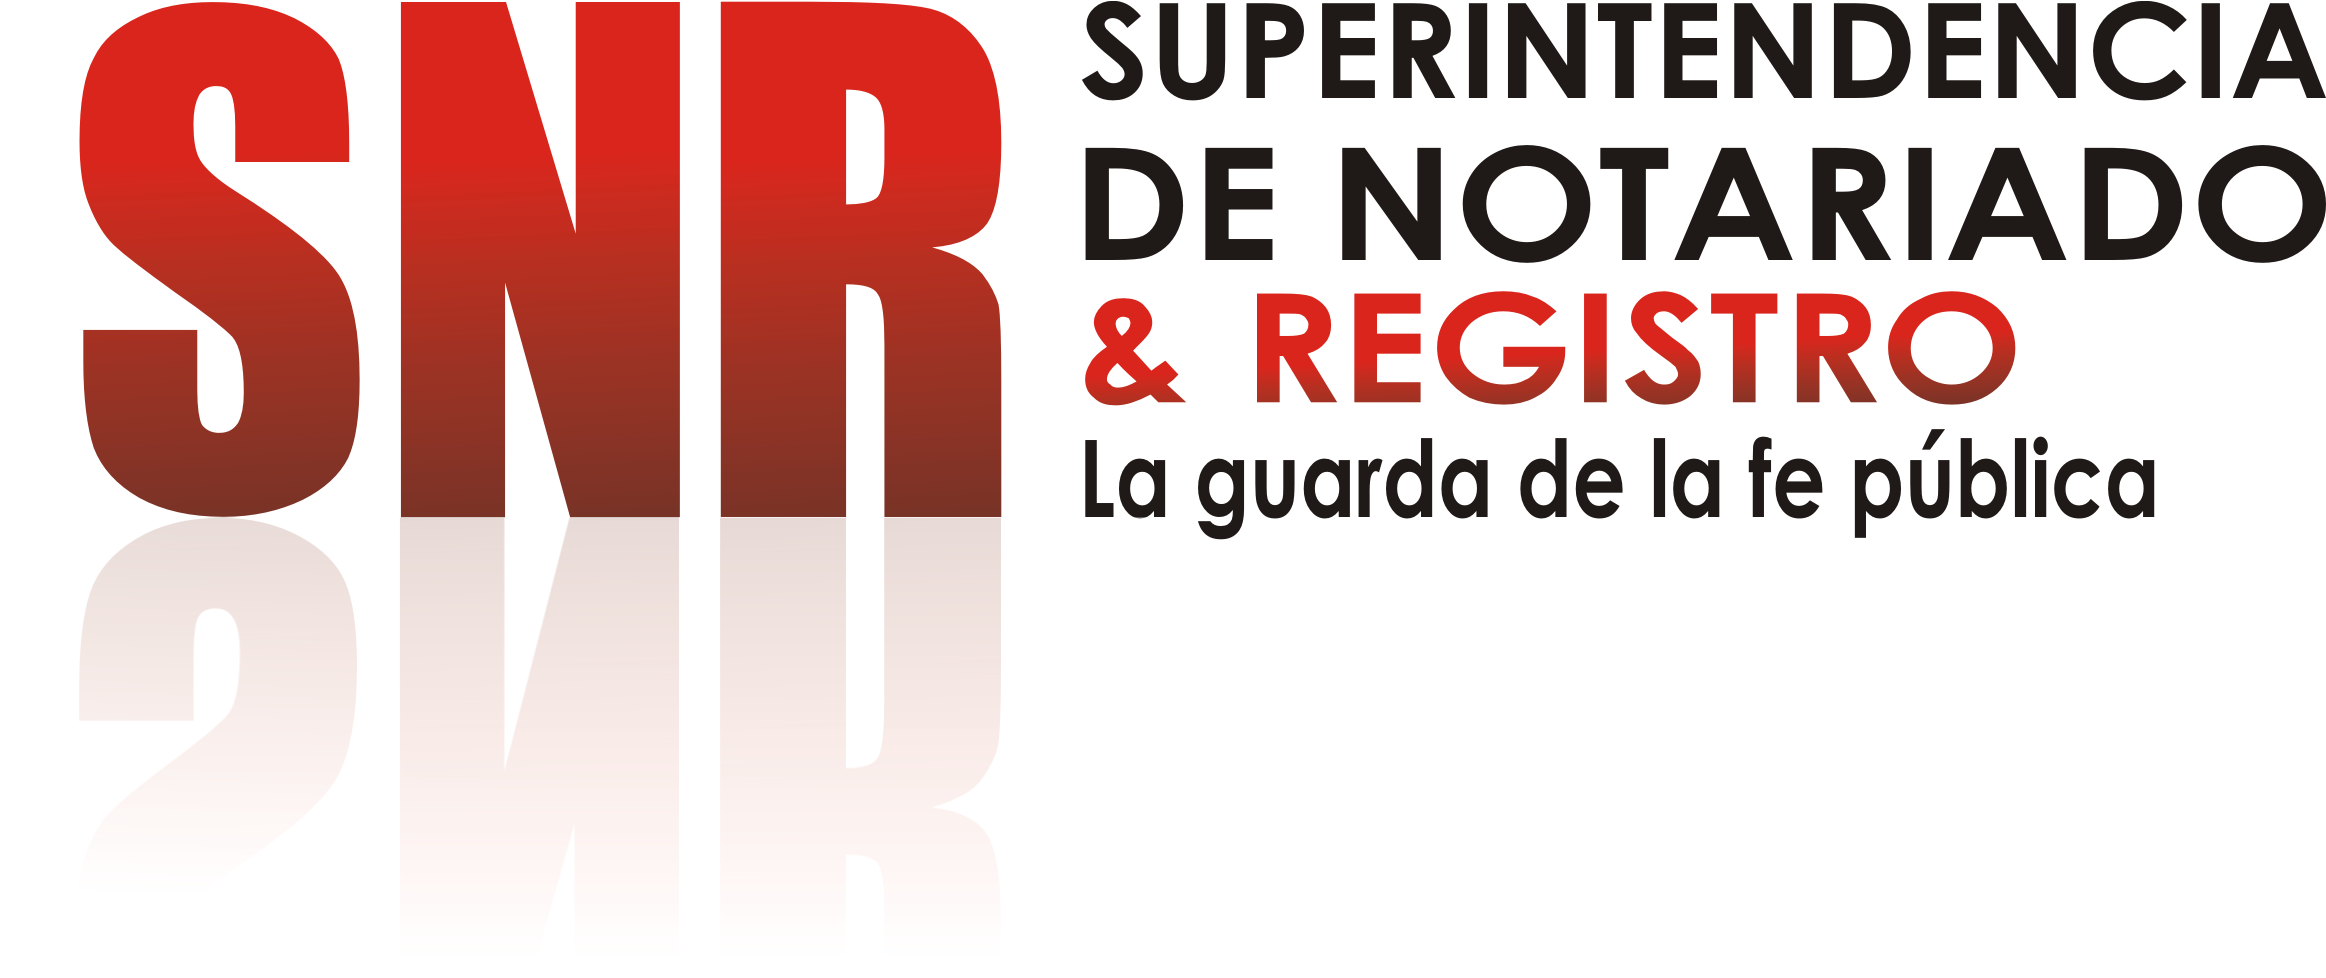 Image - Superintendencia De Notariado Y Registro Clipart (2325x1074), Png Download